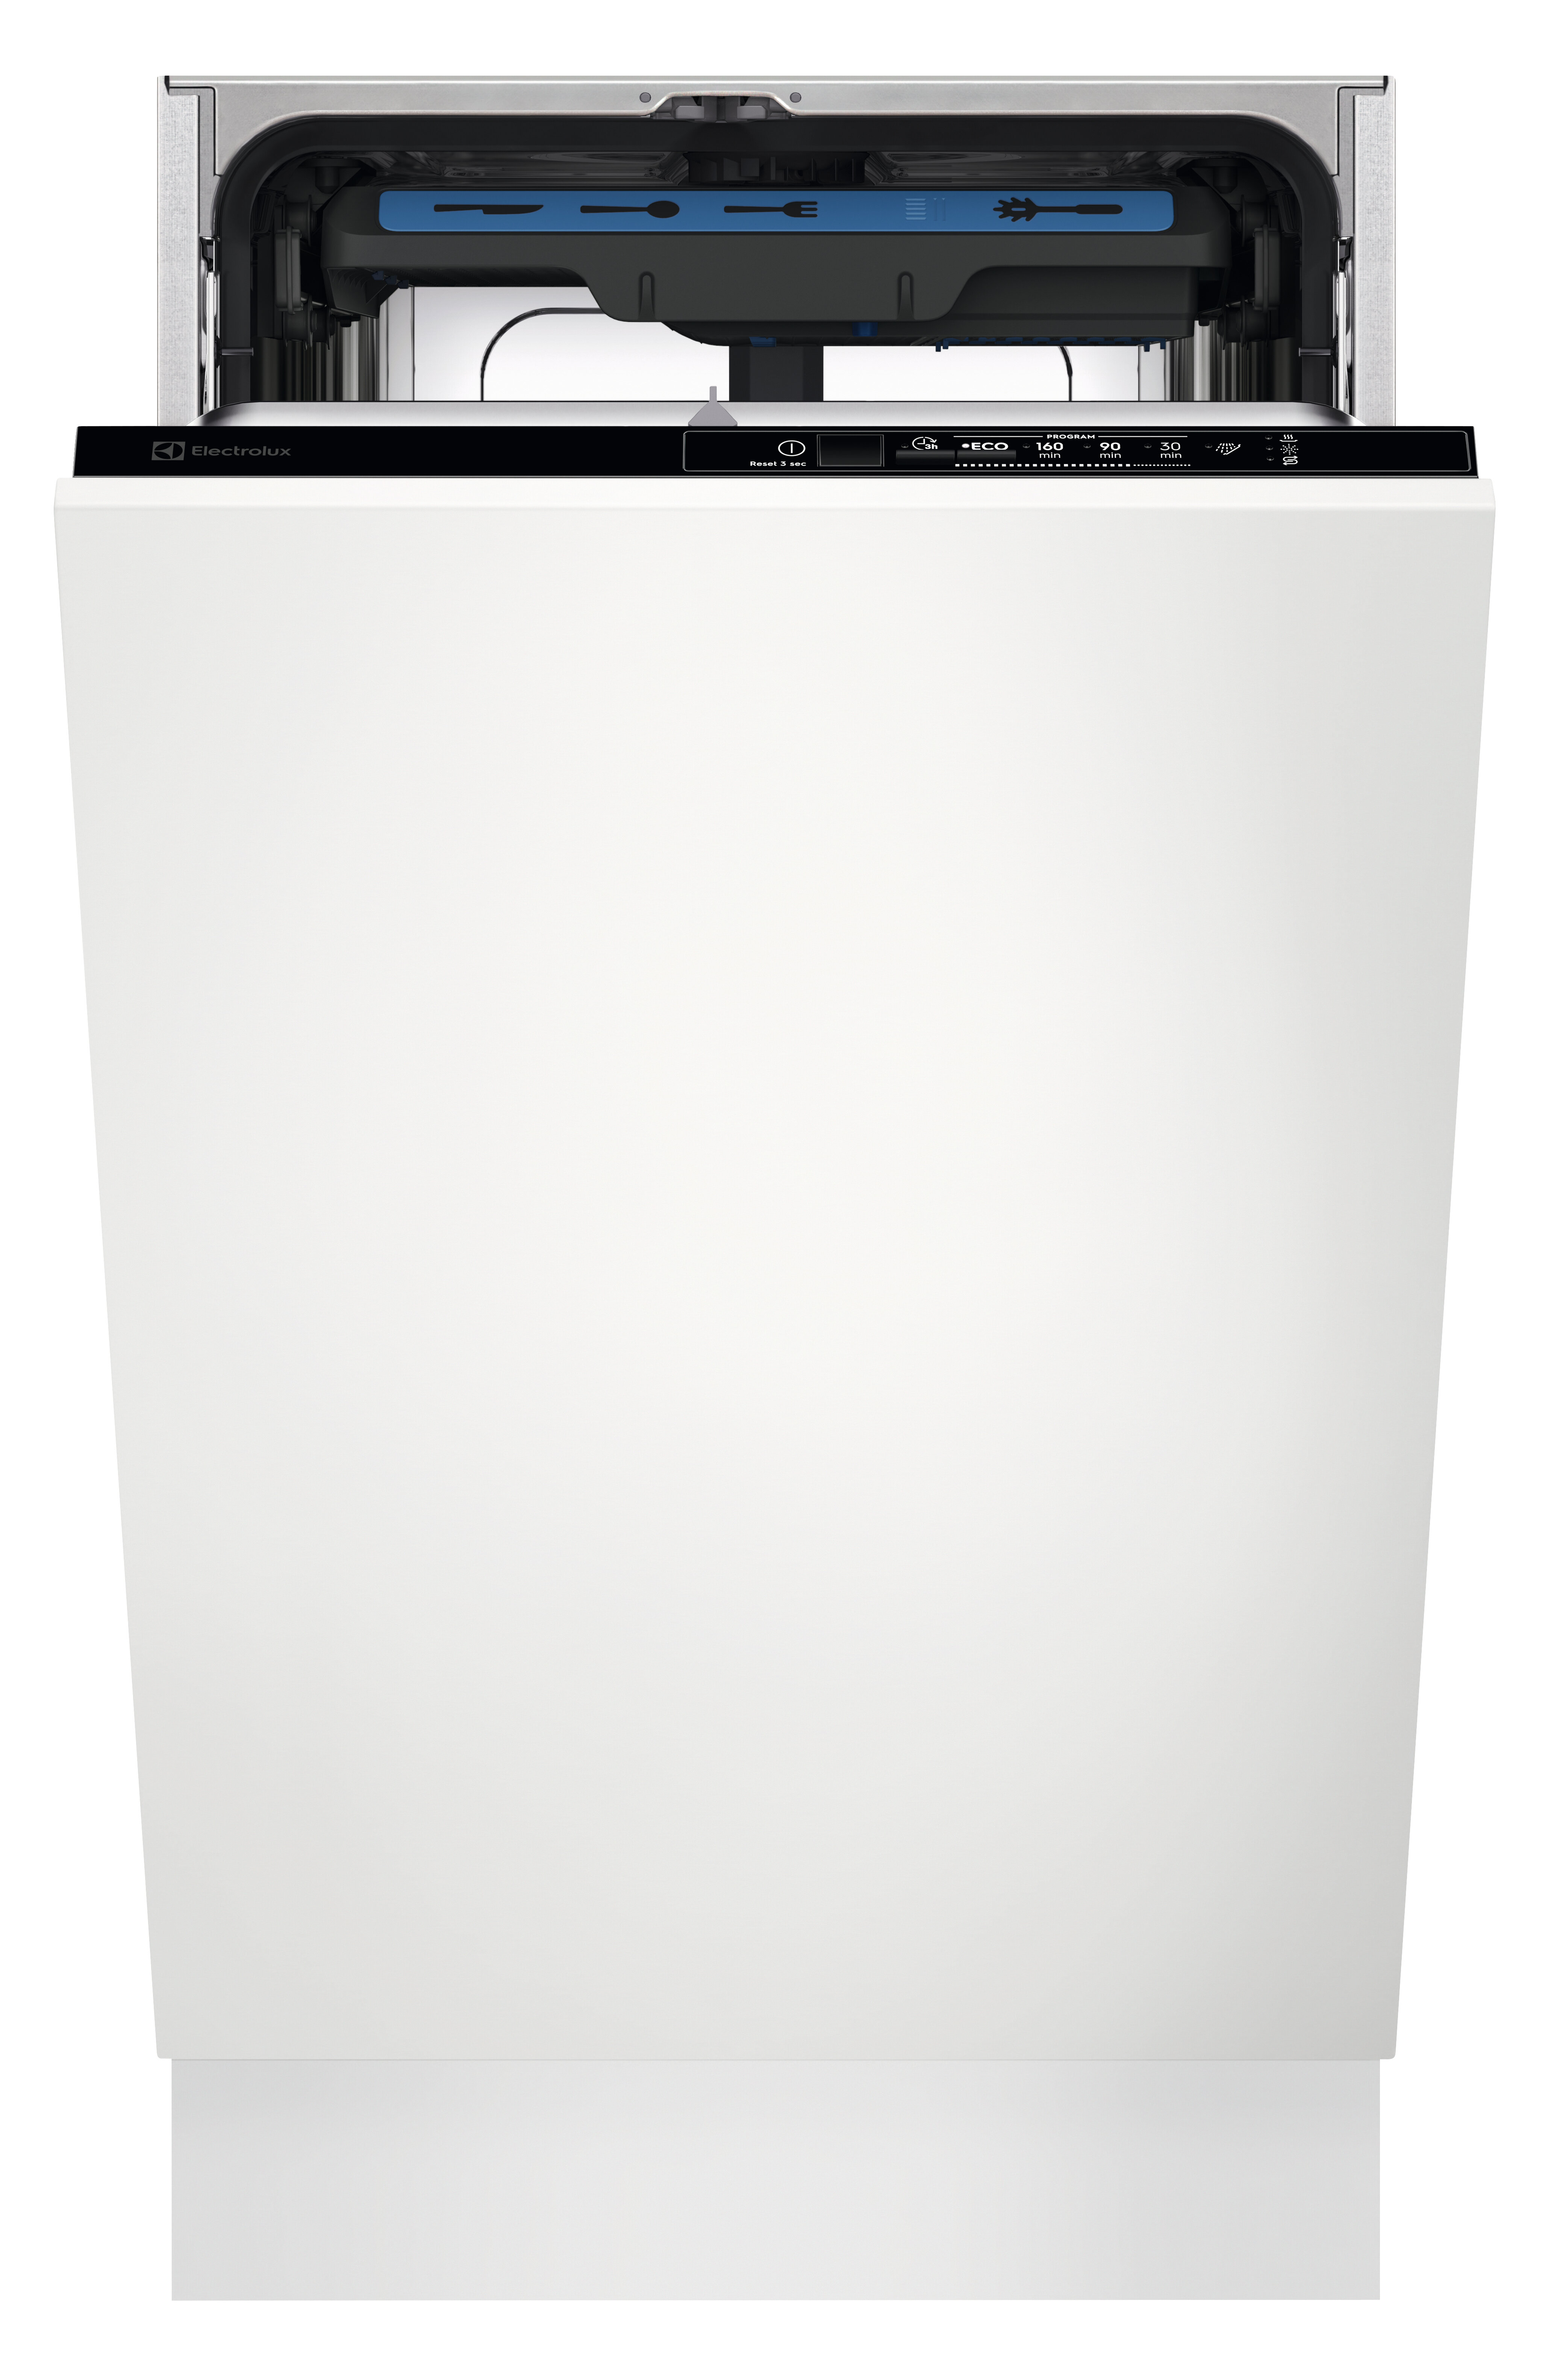 Electrolux Встраиваемые посудомоечные машины ELECTROLUX/ Встраиваемая узкая посудомоечная машина, без фасада, сенсорное управление Quick Select 1, трехцифровой дисплей, 10 комплектов, 5 программ + 3 к